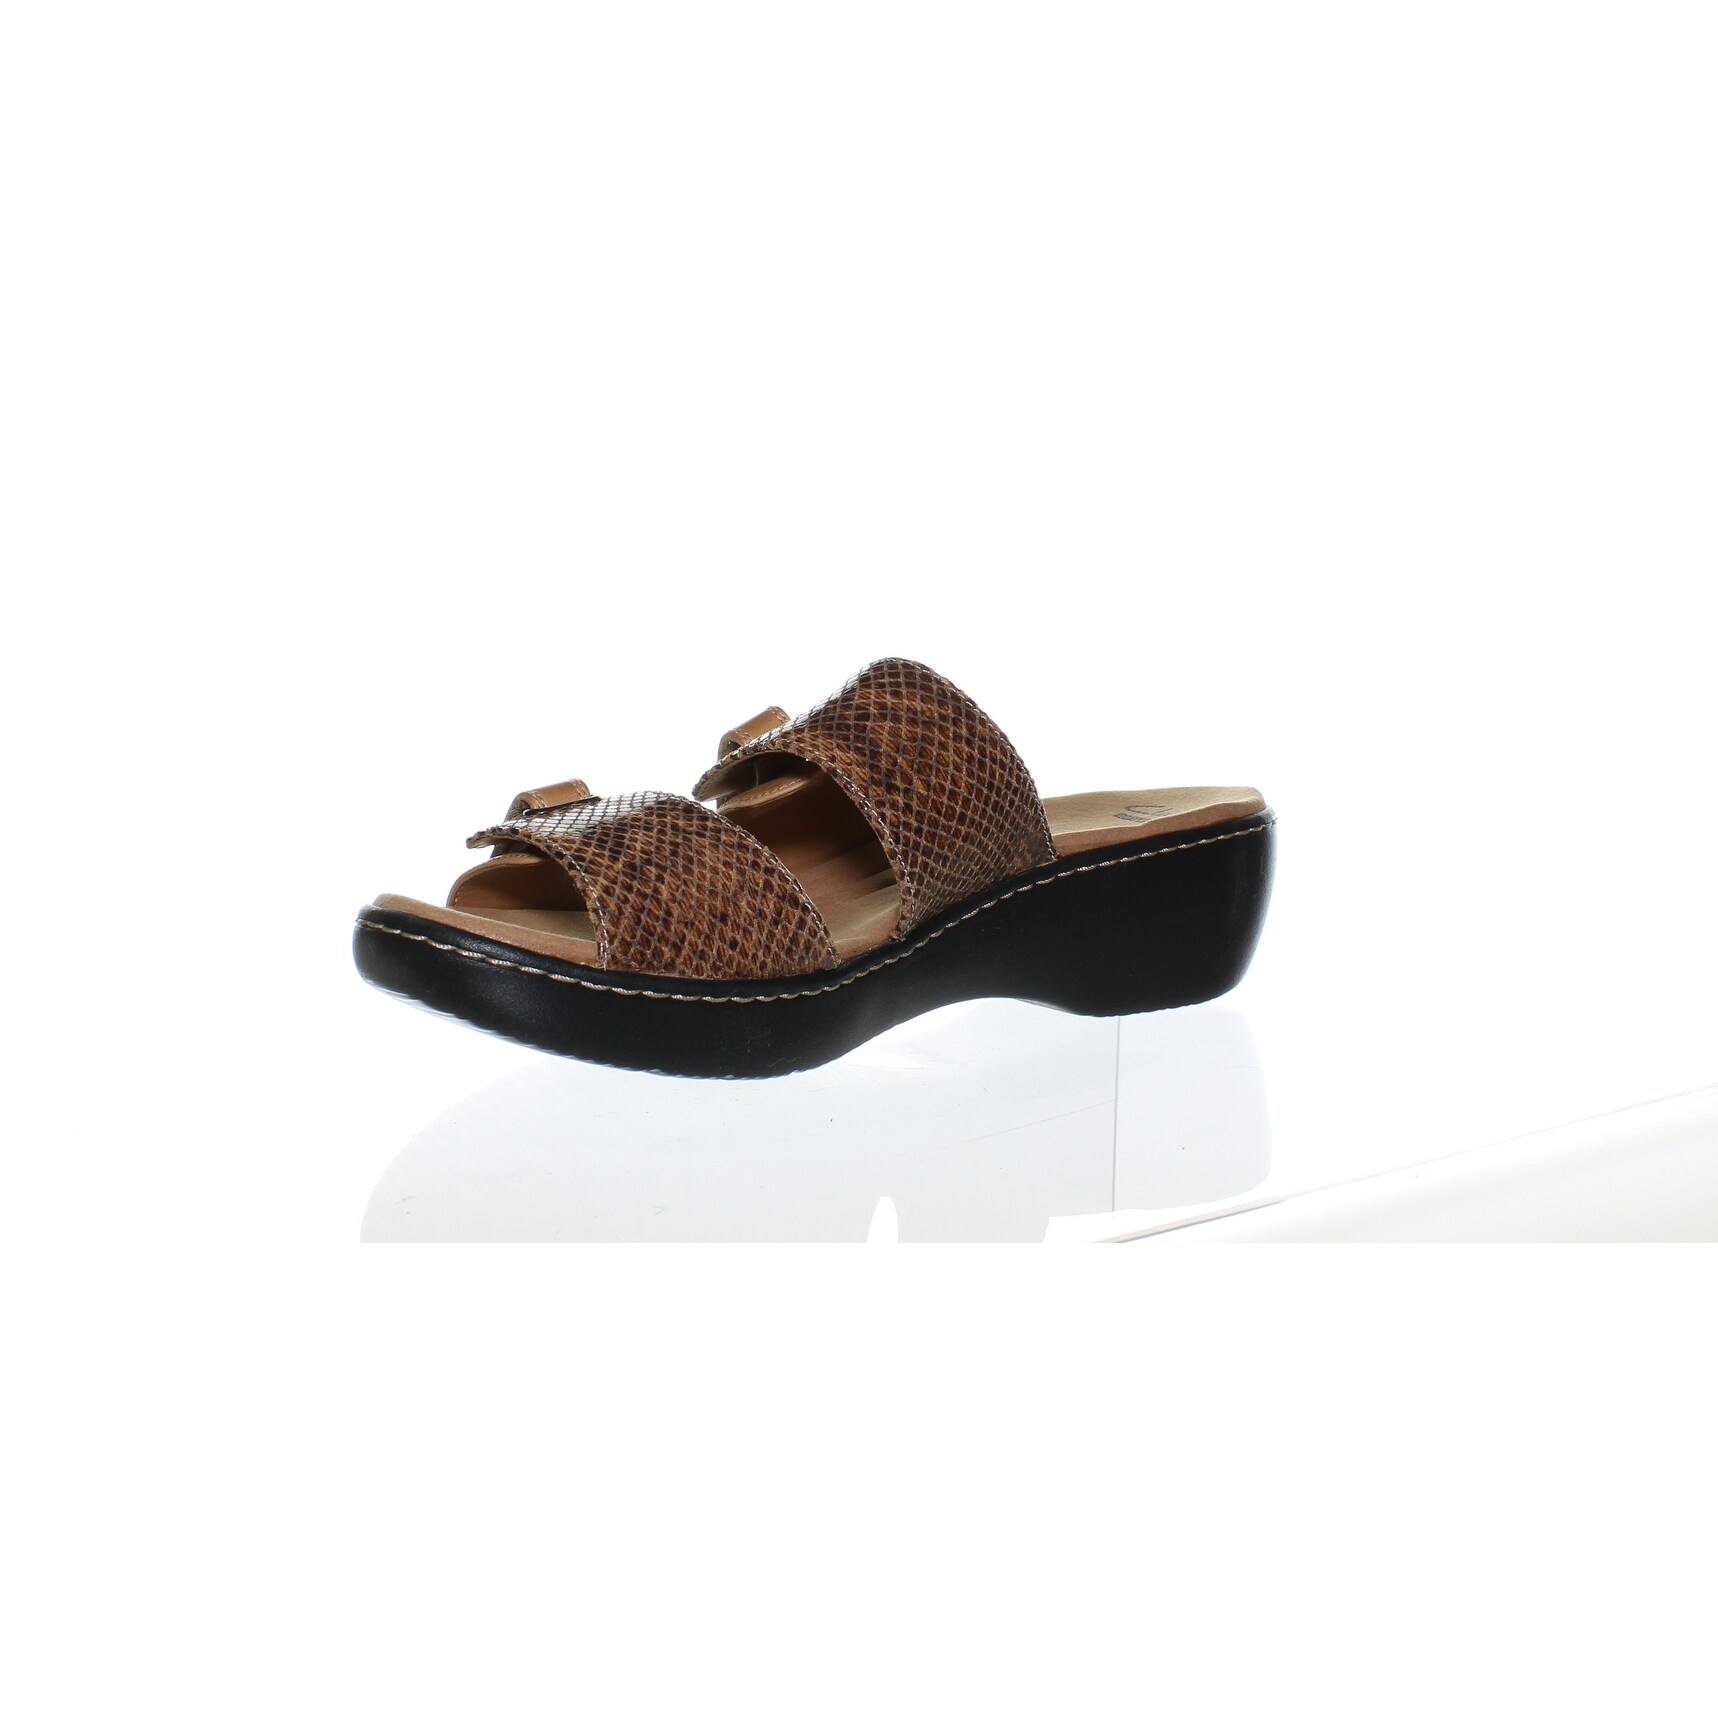 clarks sandals size 11